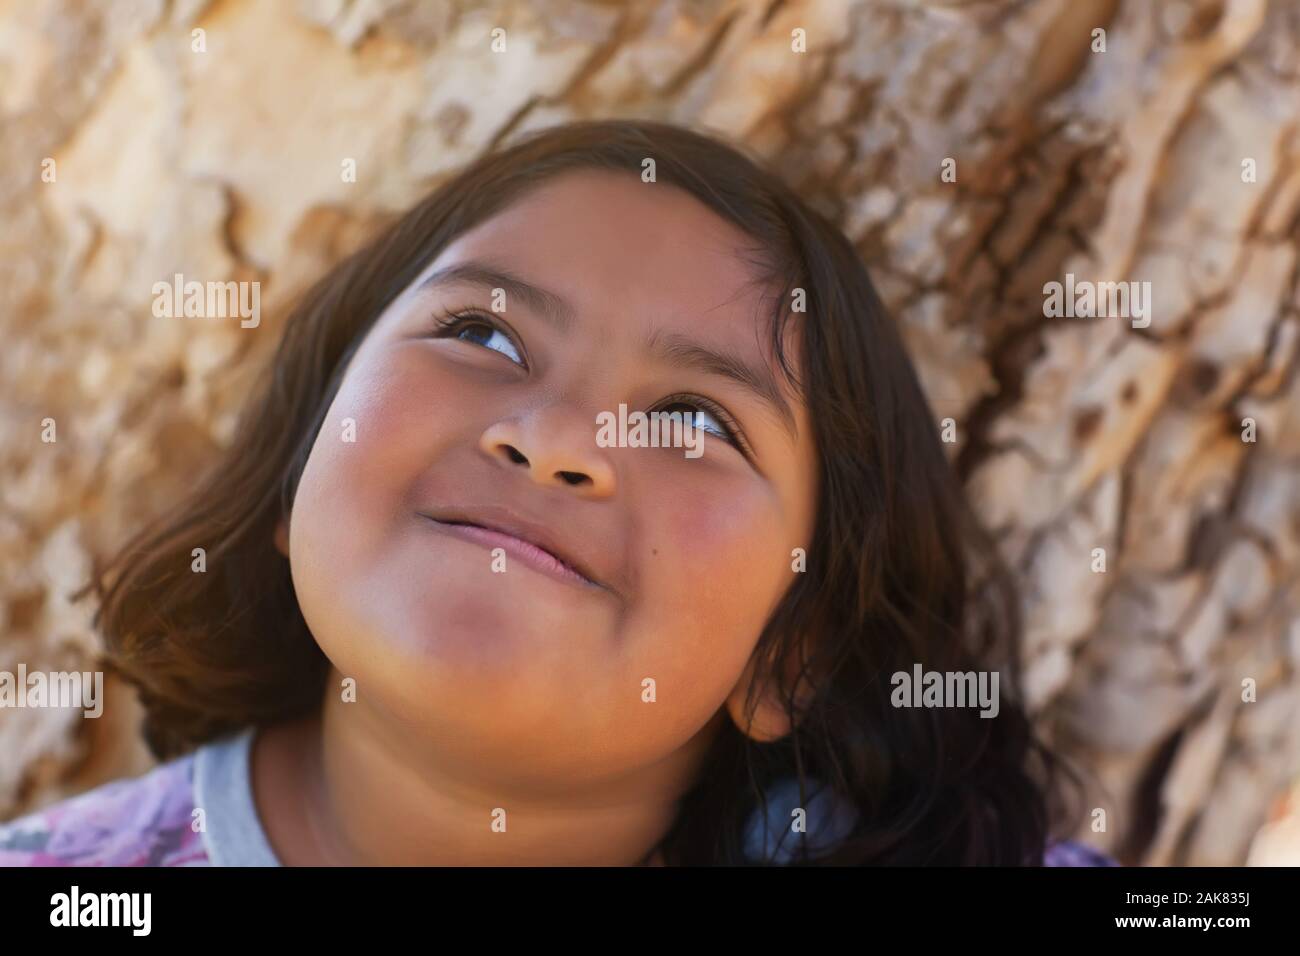 Ein junges Mädchen mit chubby Wangen, die voller Freude ist und lächelnd beim Stehen neben einem Baum und genießen die Sonne. Stockfoto